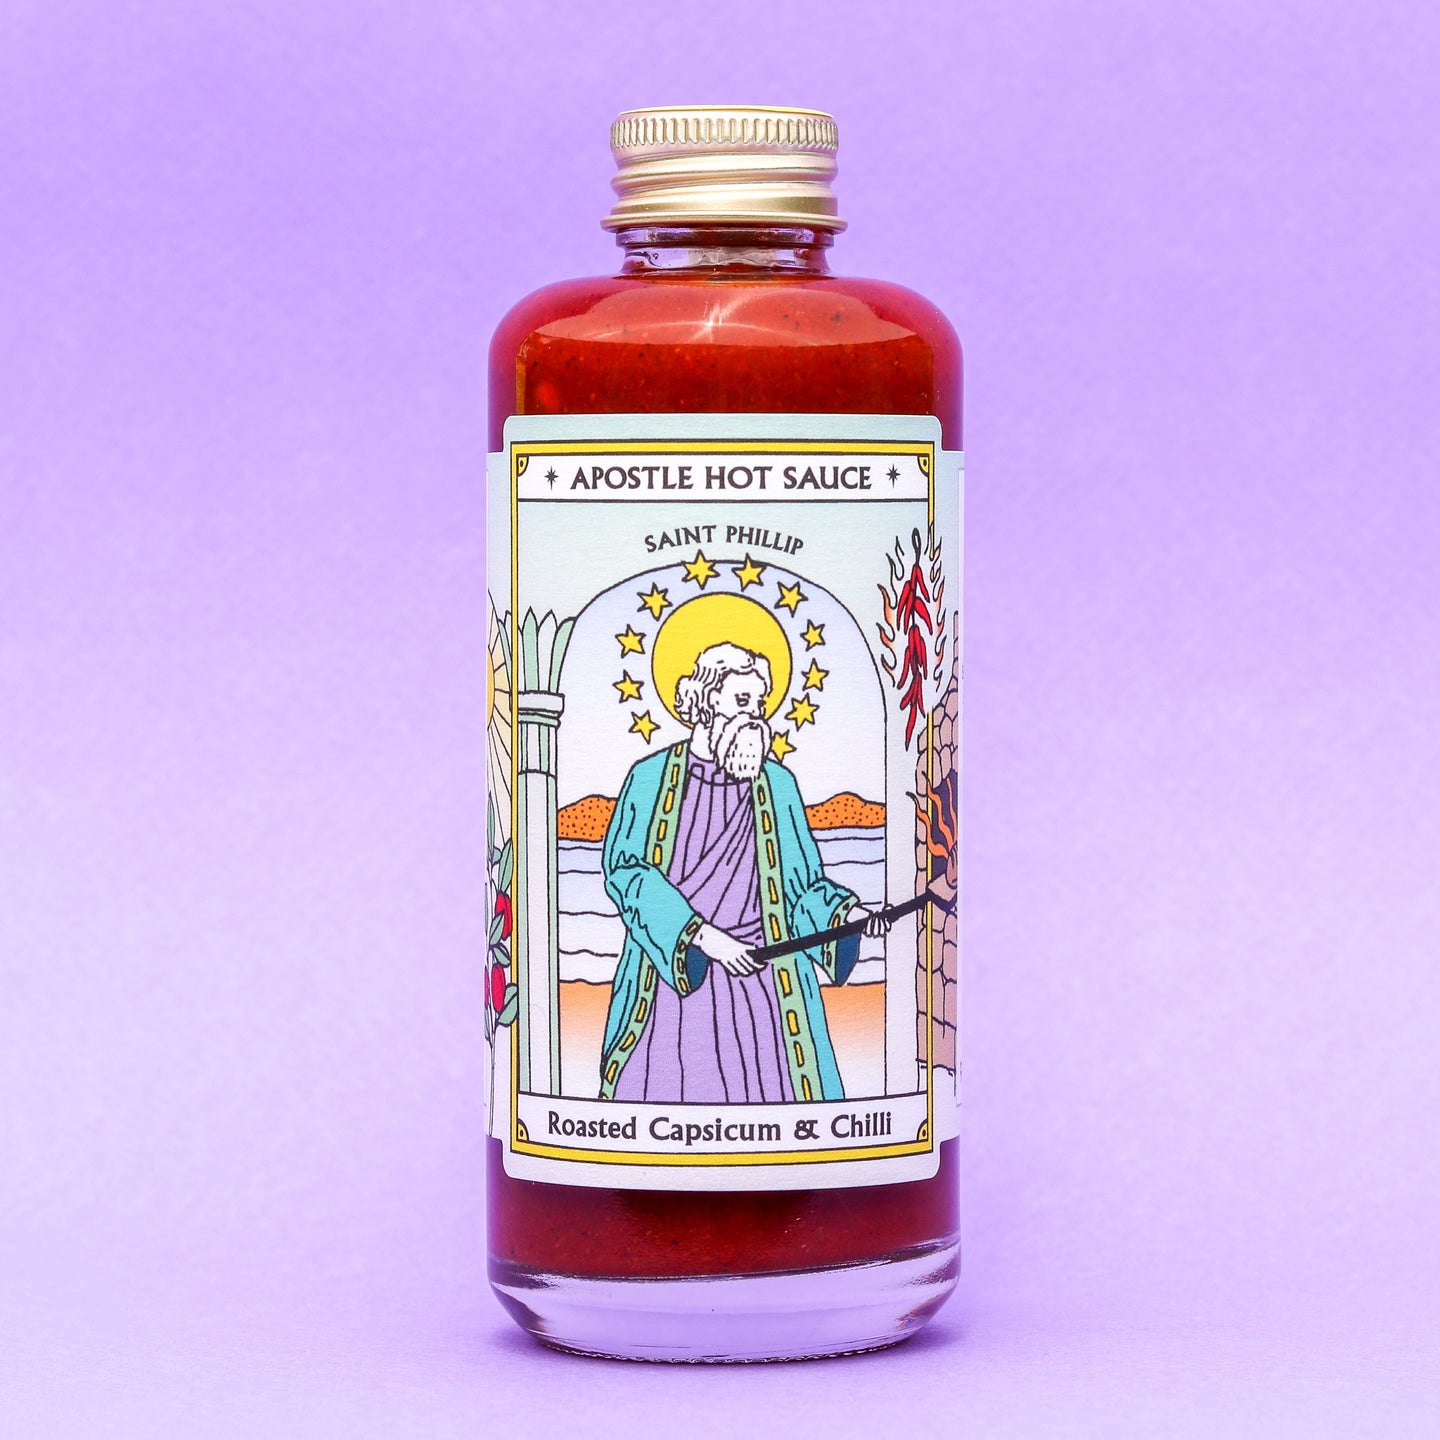 Apostle Hot Sauce - St Phillip - Roasted Capsicum & Chilli